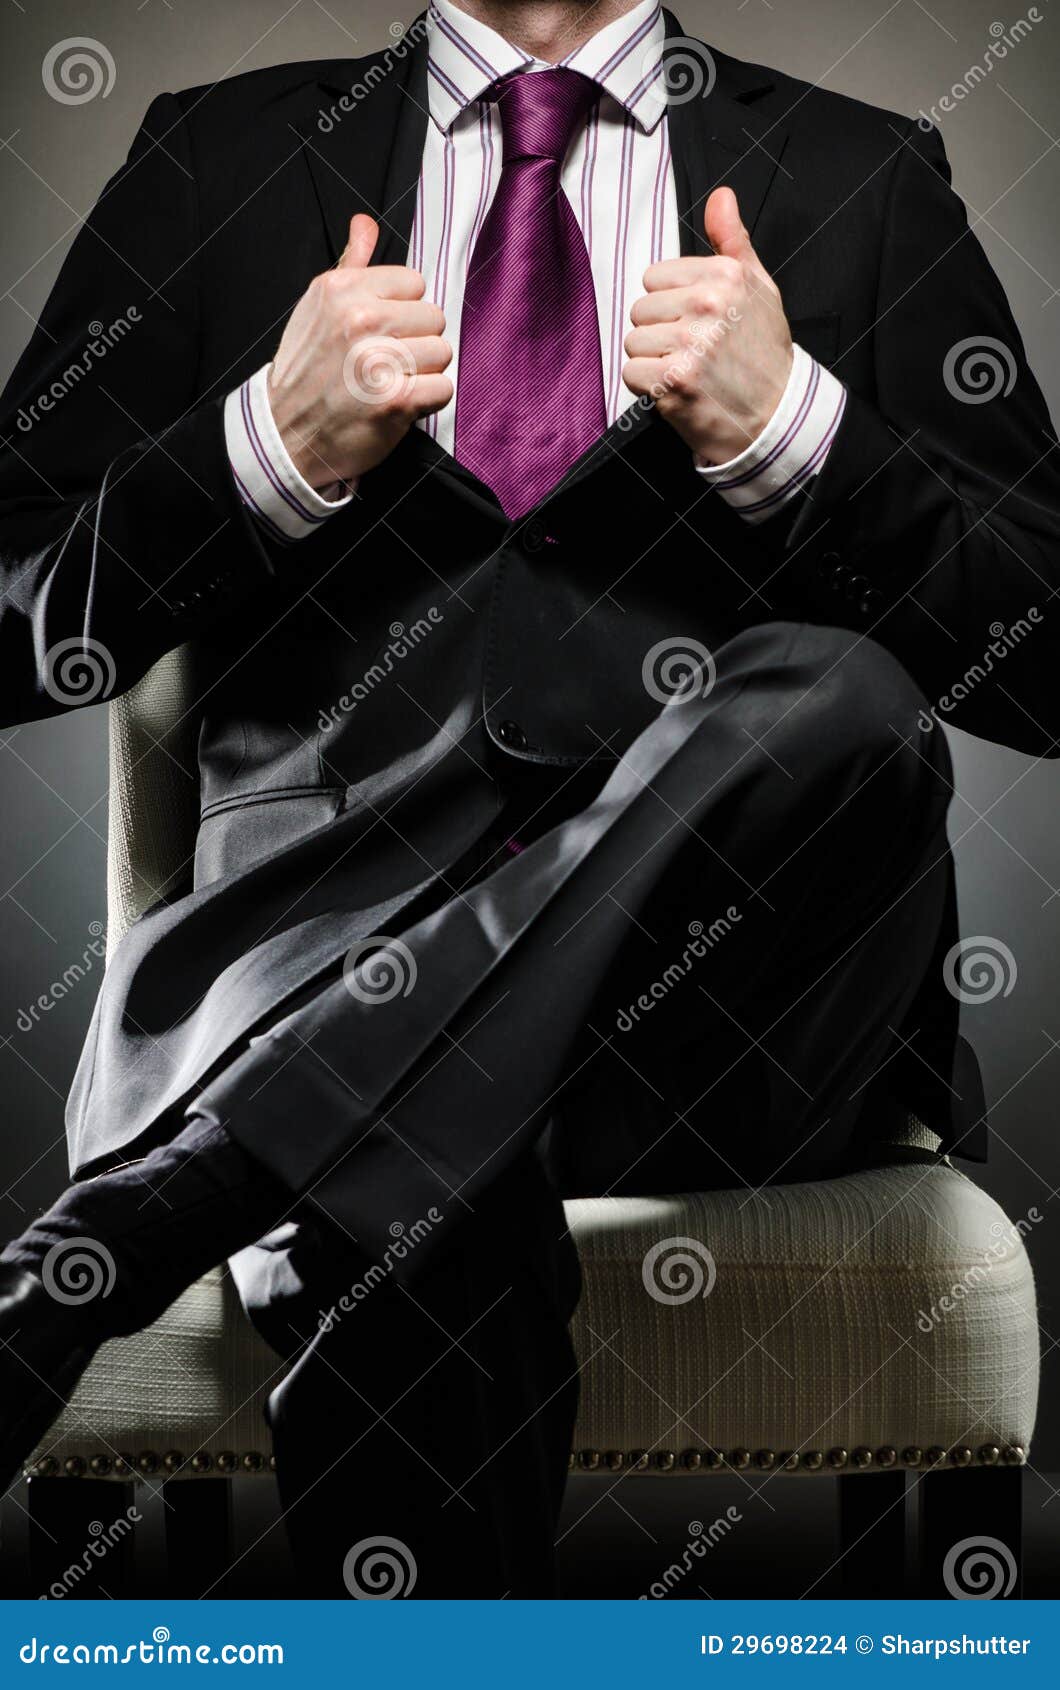 Επιχειρησιακό άτομο που φορά το κοστούμι. Εικόνα της συνεδρίασης επιχειρησιακών ατόμων στην καρέκλα